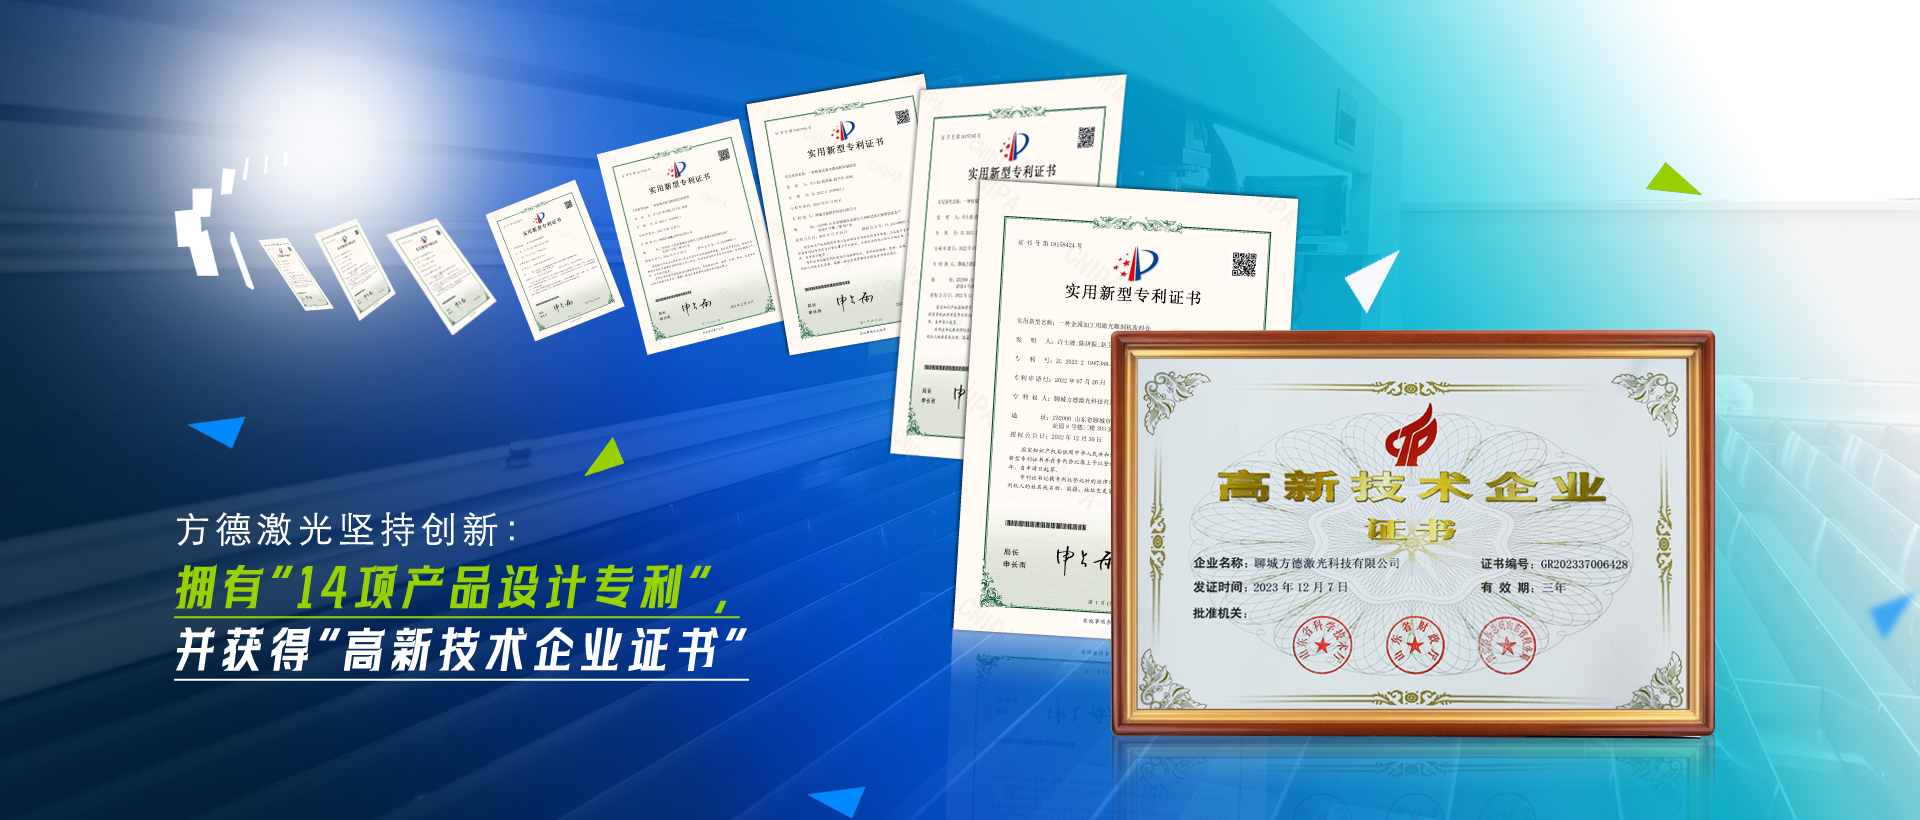 澳门新莆京888052荣获“高新技术企业证书”